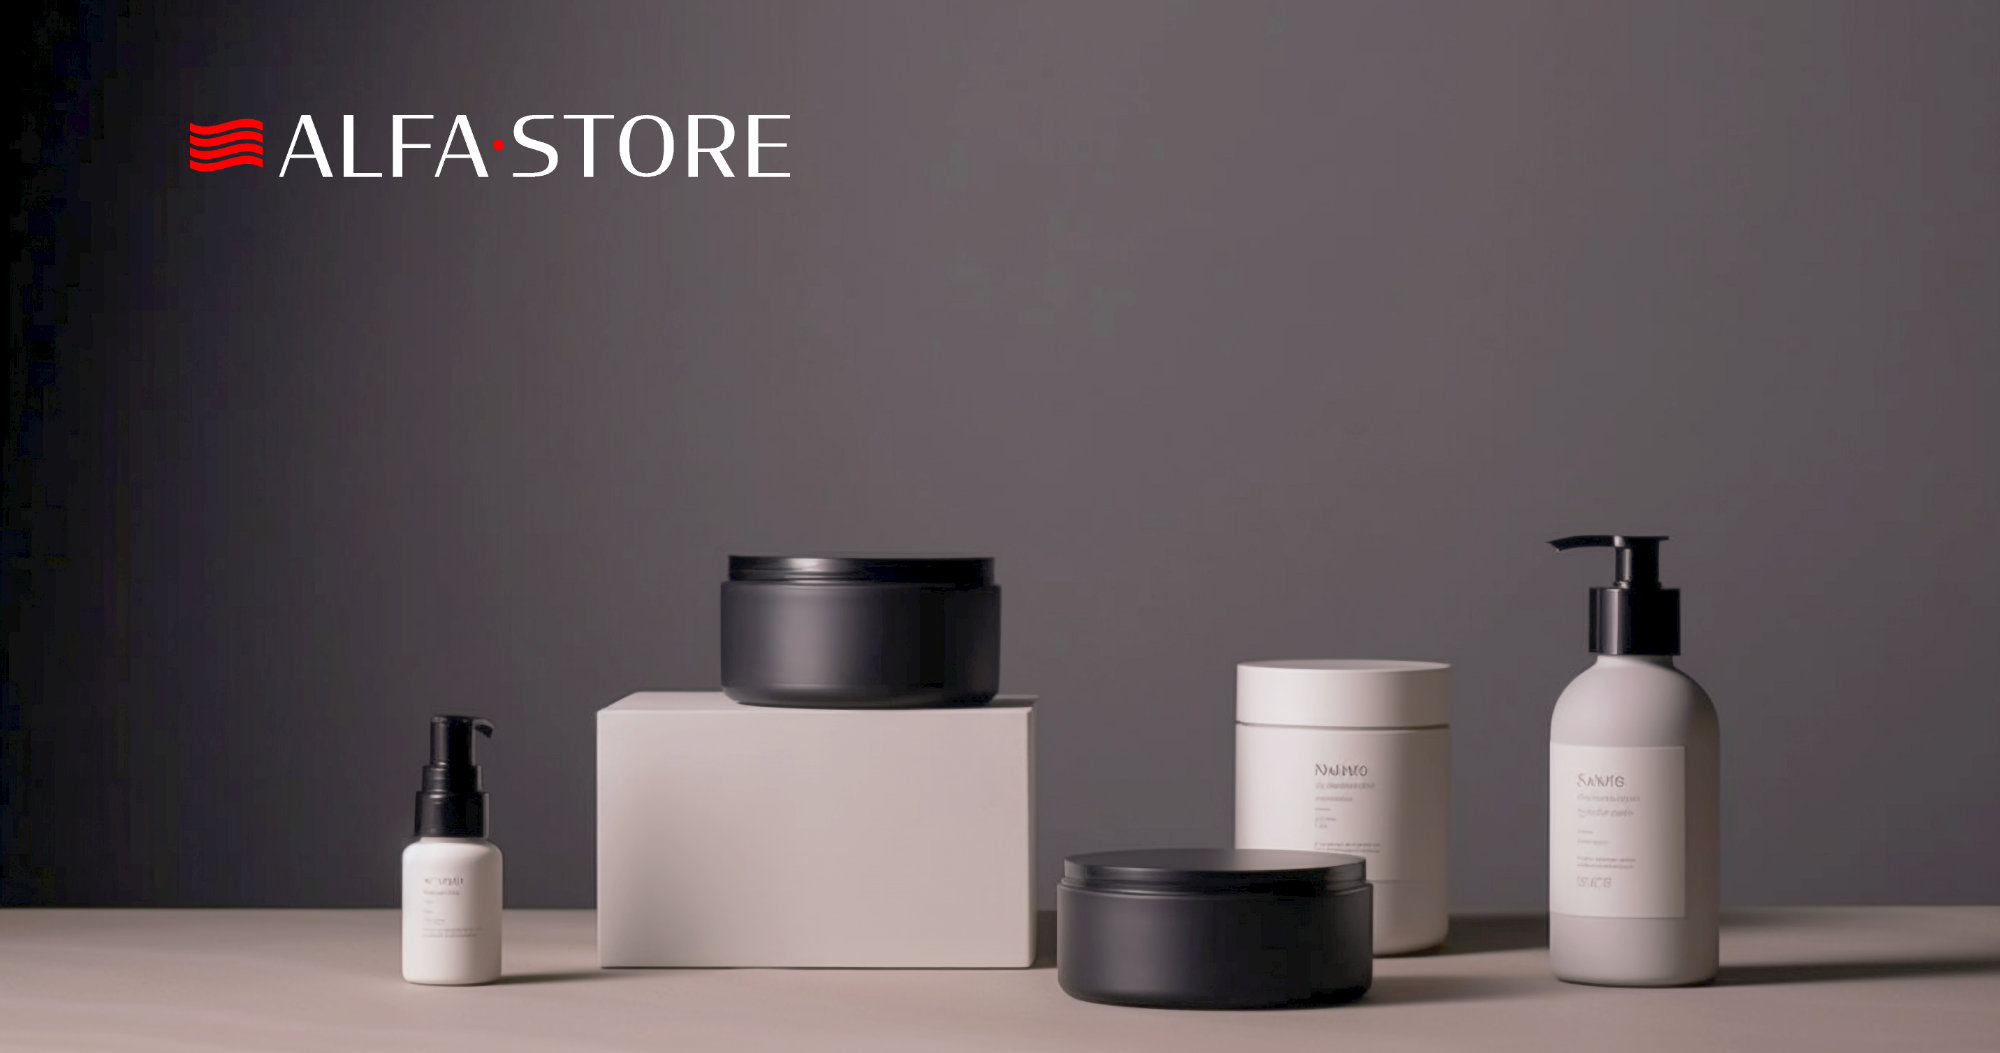 AlfaStore - Hochwertige Friseur-Produkte erstrahlen in neuem Shopdesign